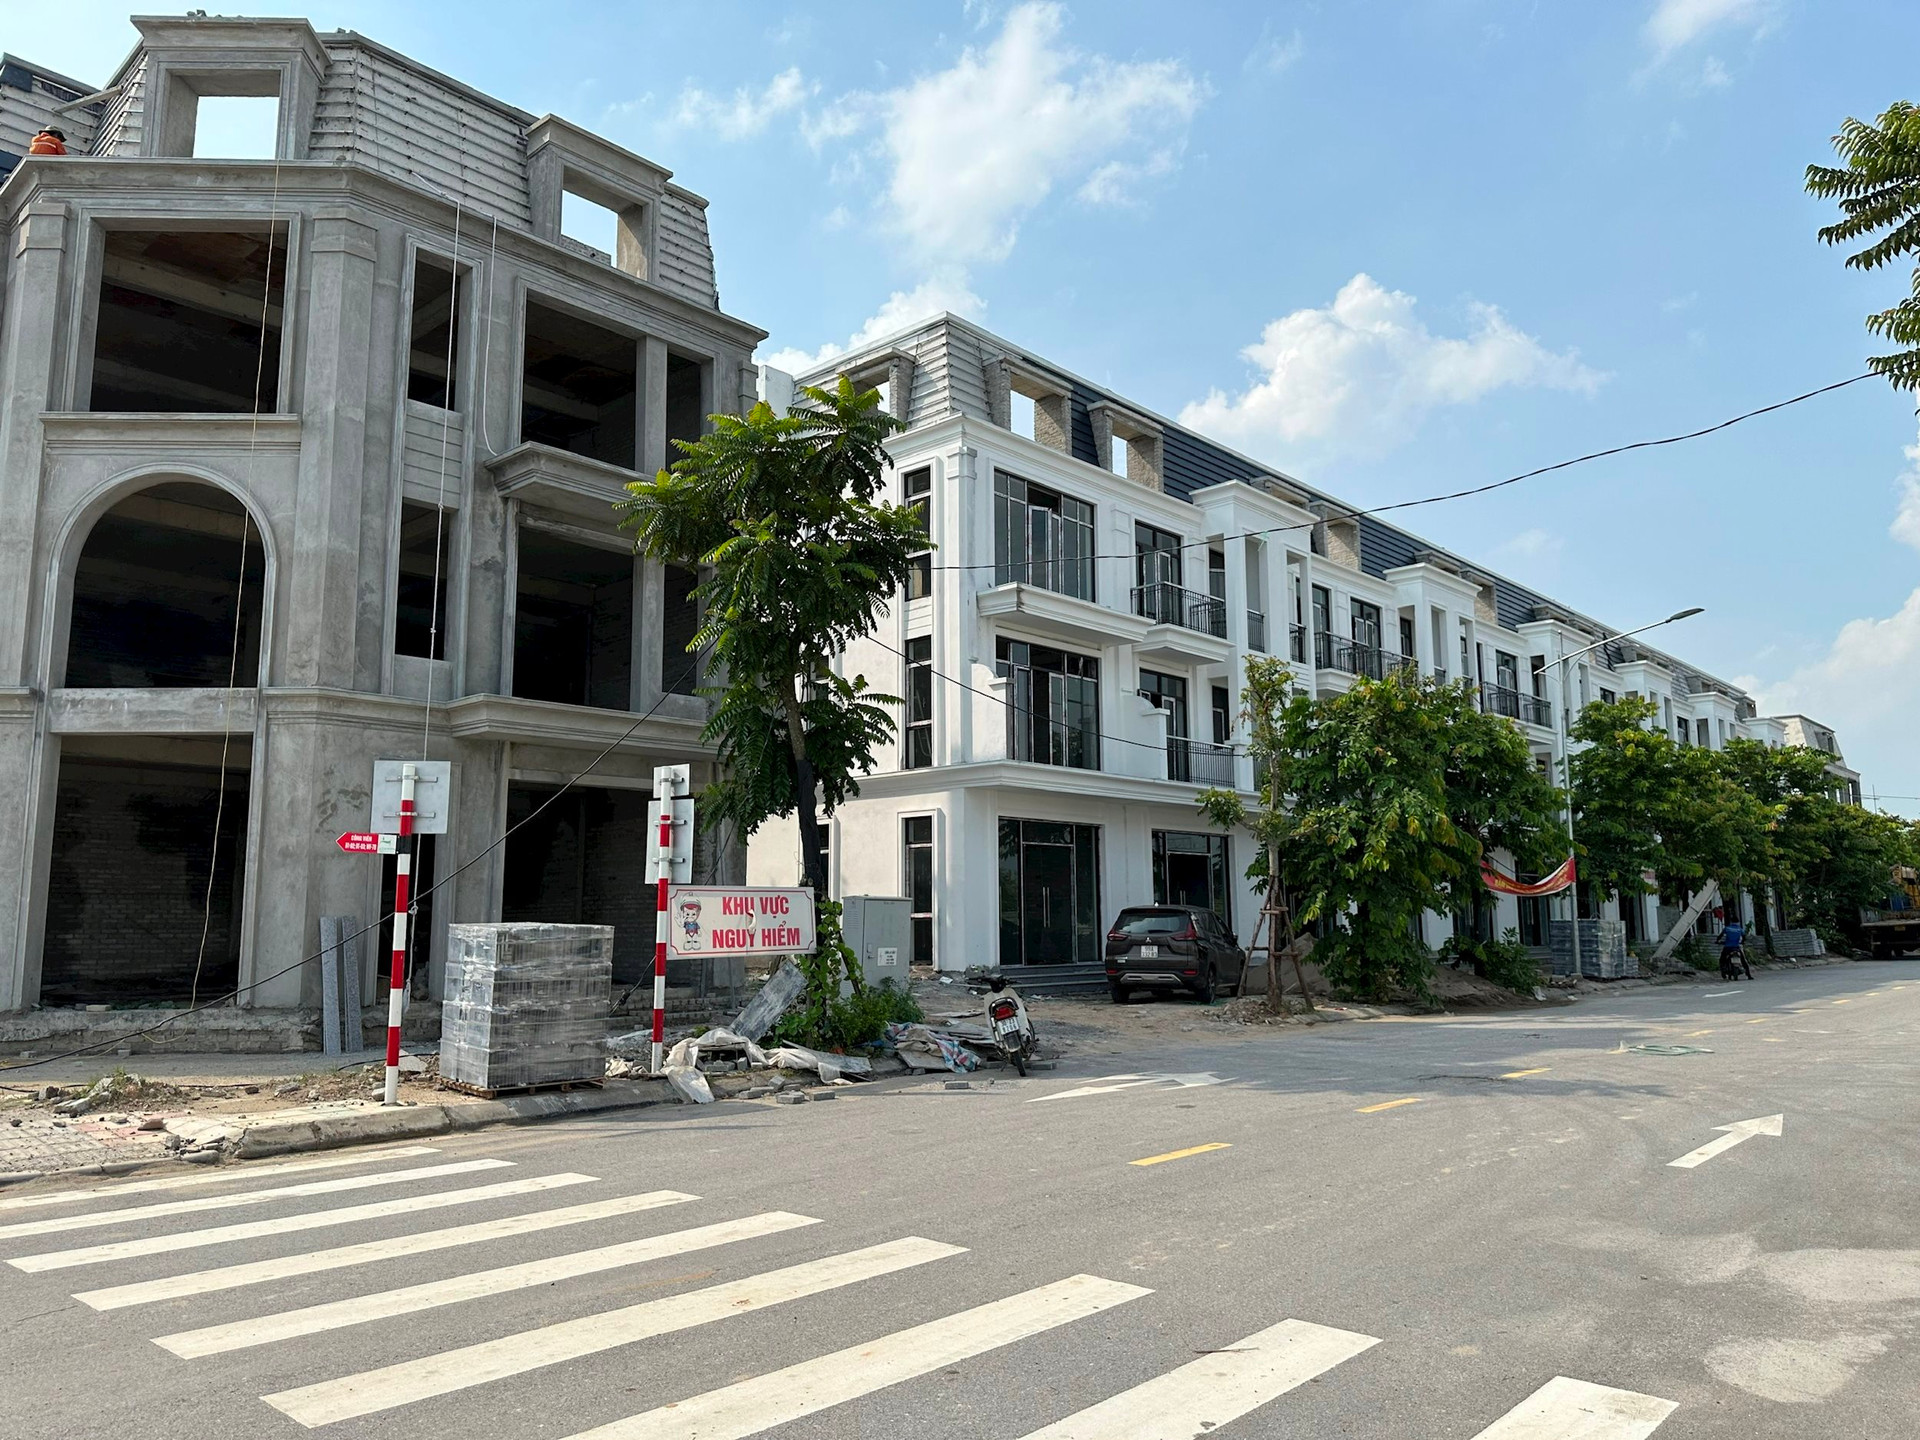 Một dự án bất động sản tại Hà Nội từng gây xôn xao khi mở bán trả giá công khai, nay giá thấp hơn gần 20%, môi giới chào mời: “Sẽ tăng gấp 2 lần trong 3 năm” - Ảnh 1.